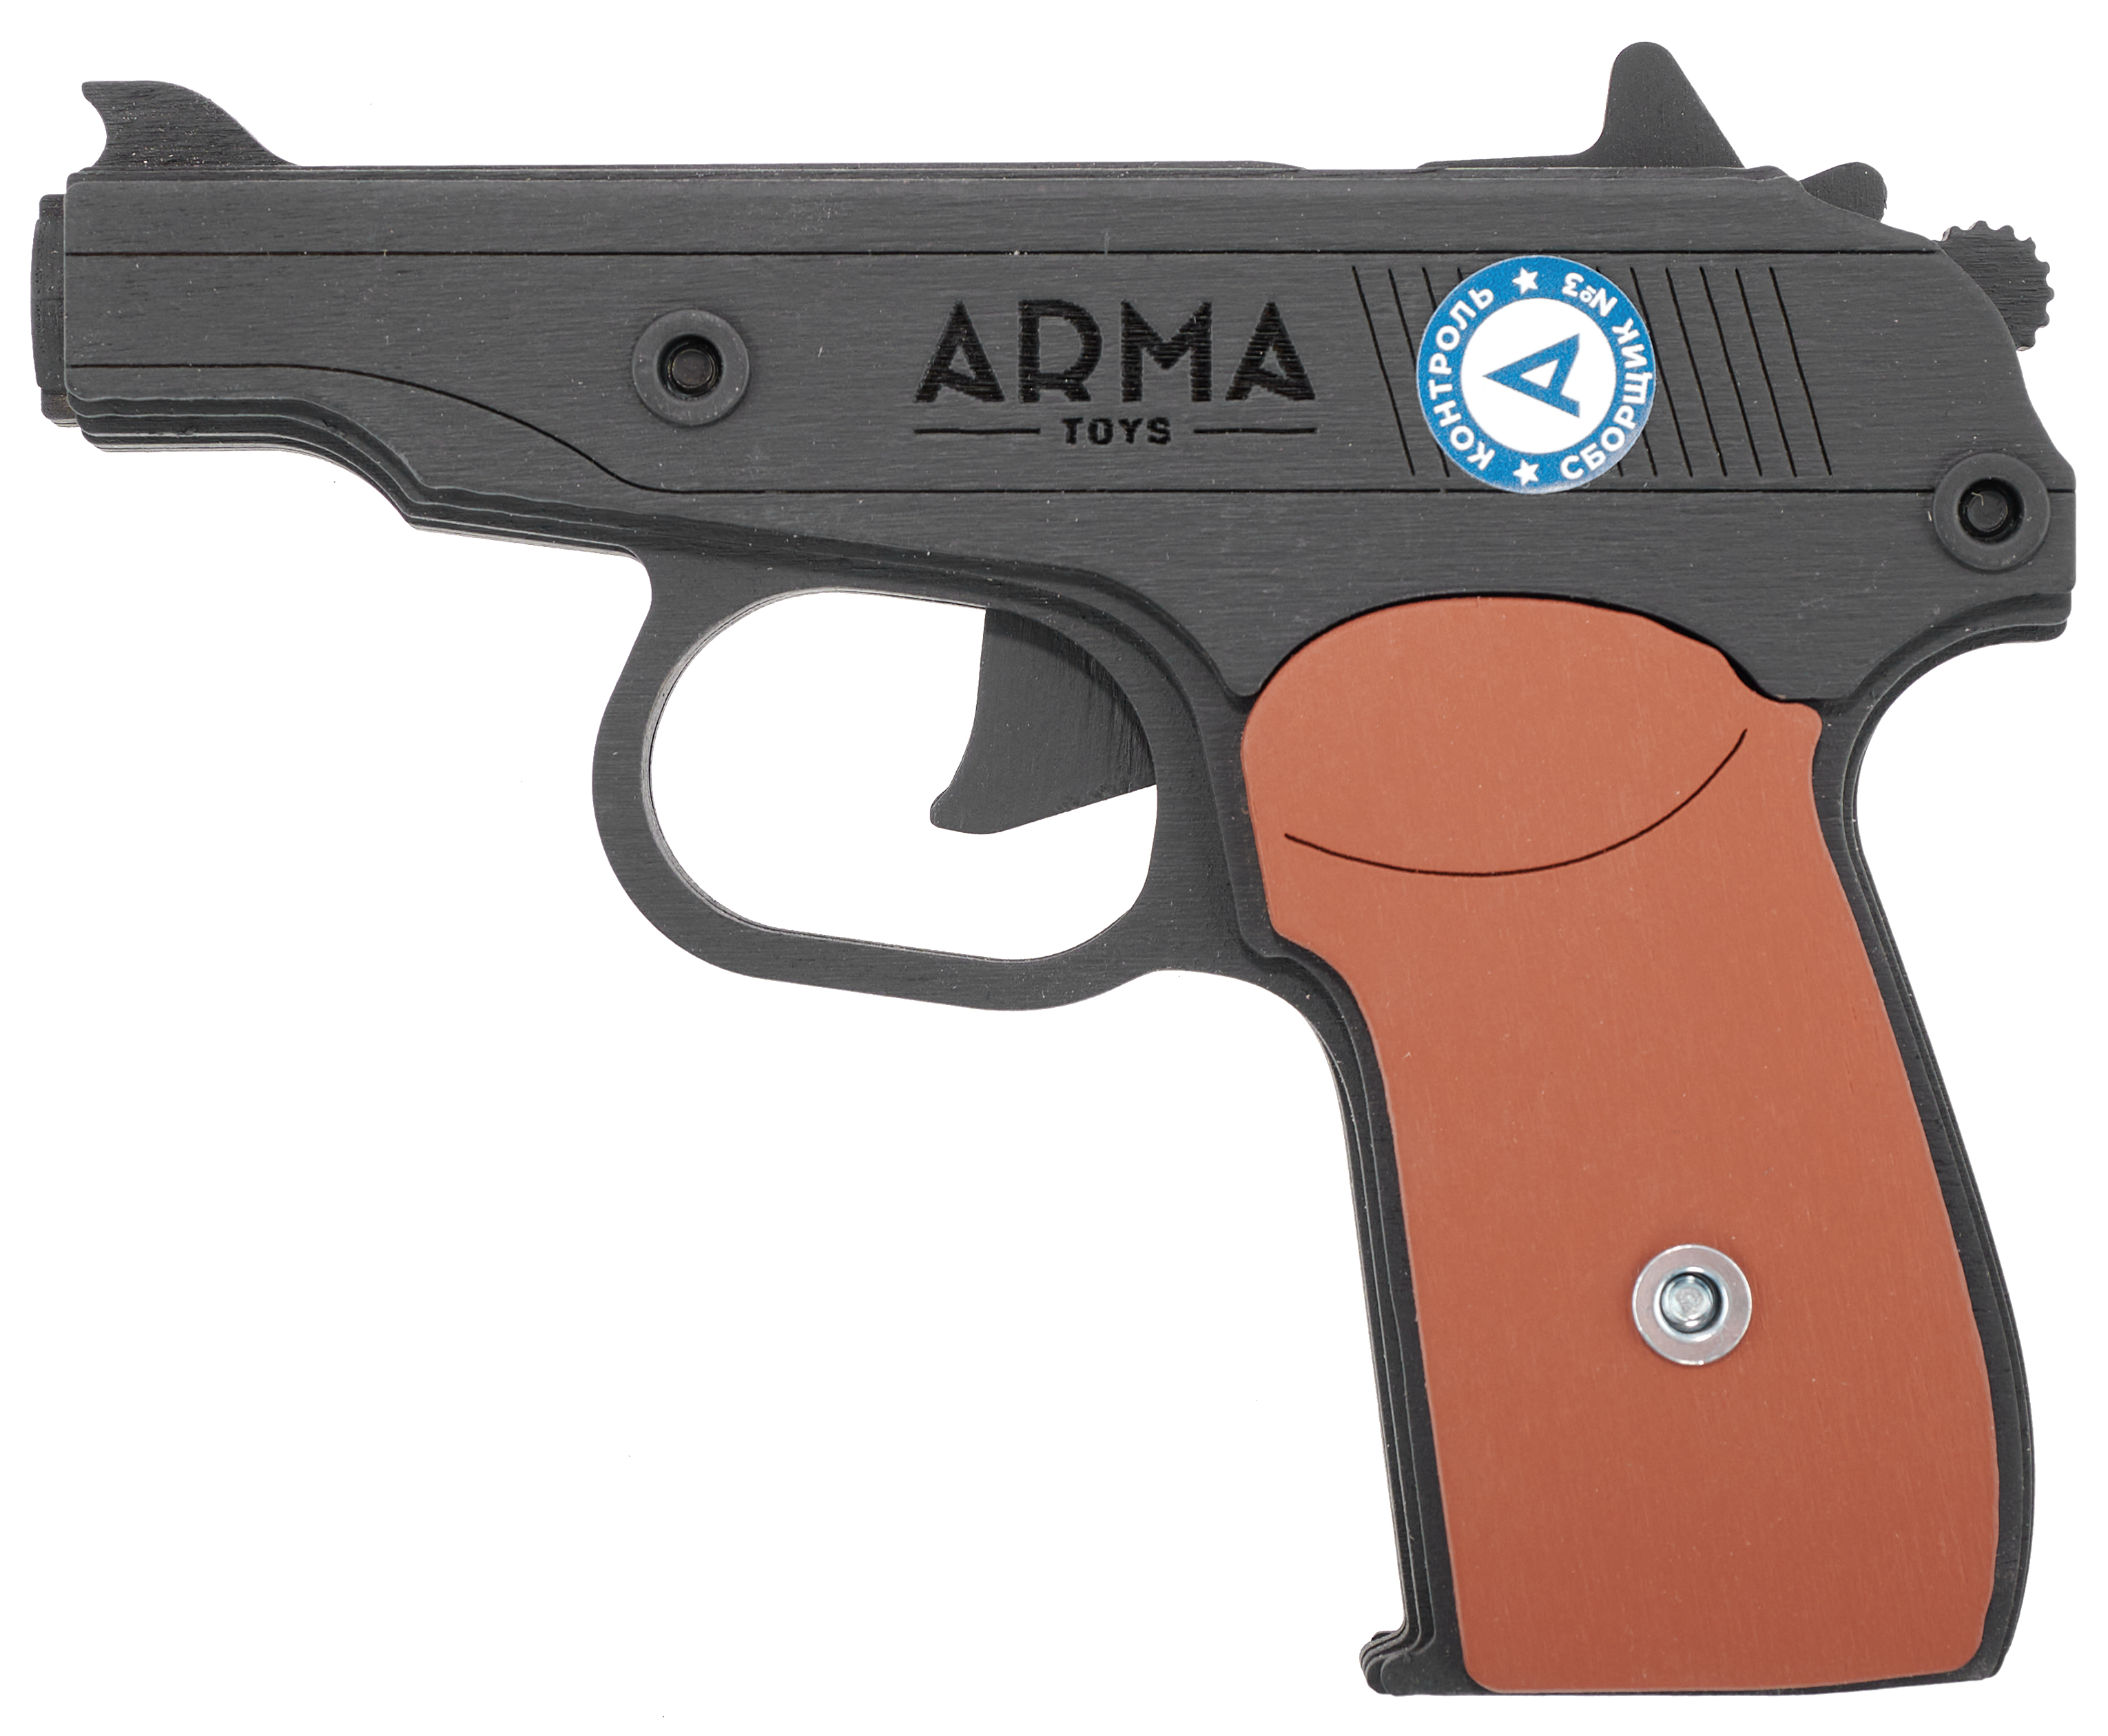 Резинкострел игрушечный Arma toys пистолет Макарова макет, ПМ, окрашенный, AT012K резинкострел игрушечный arma toys пистолет пулемет ппш макет at007